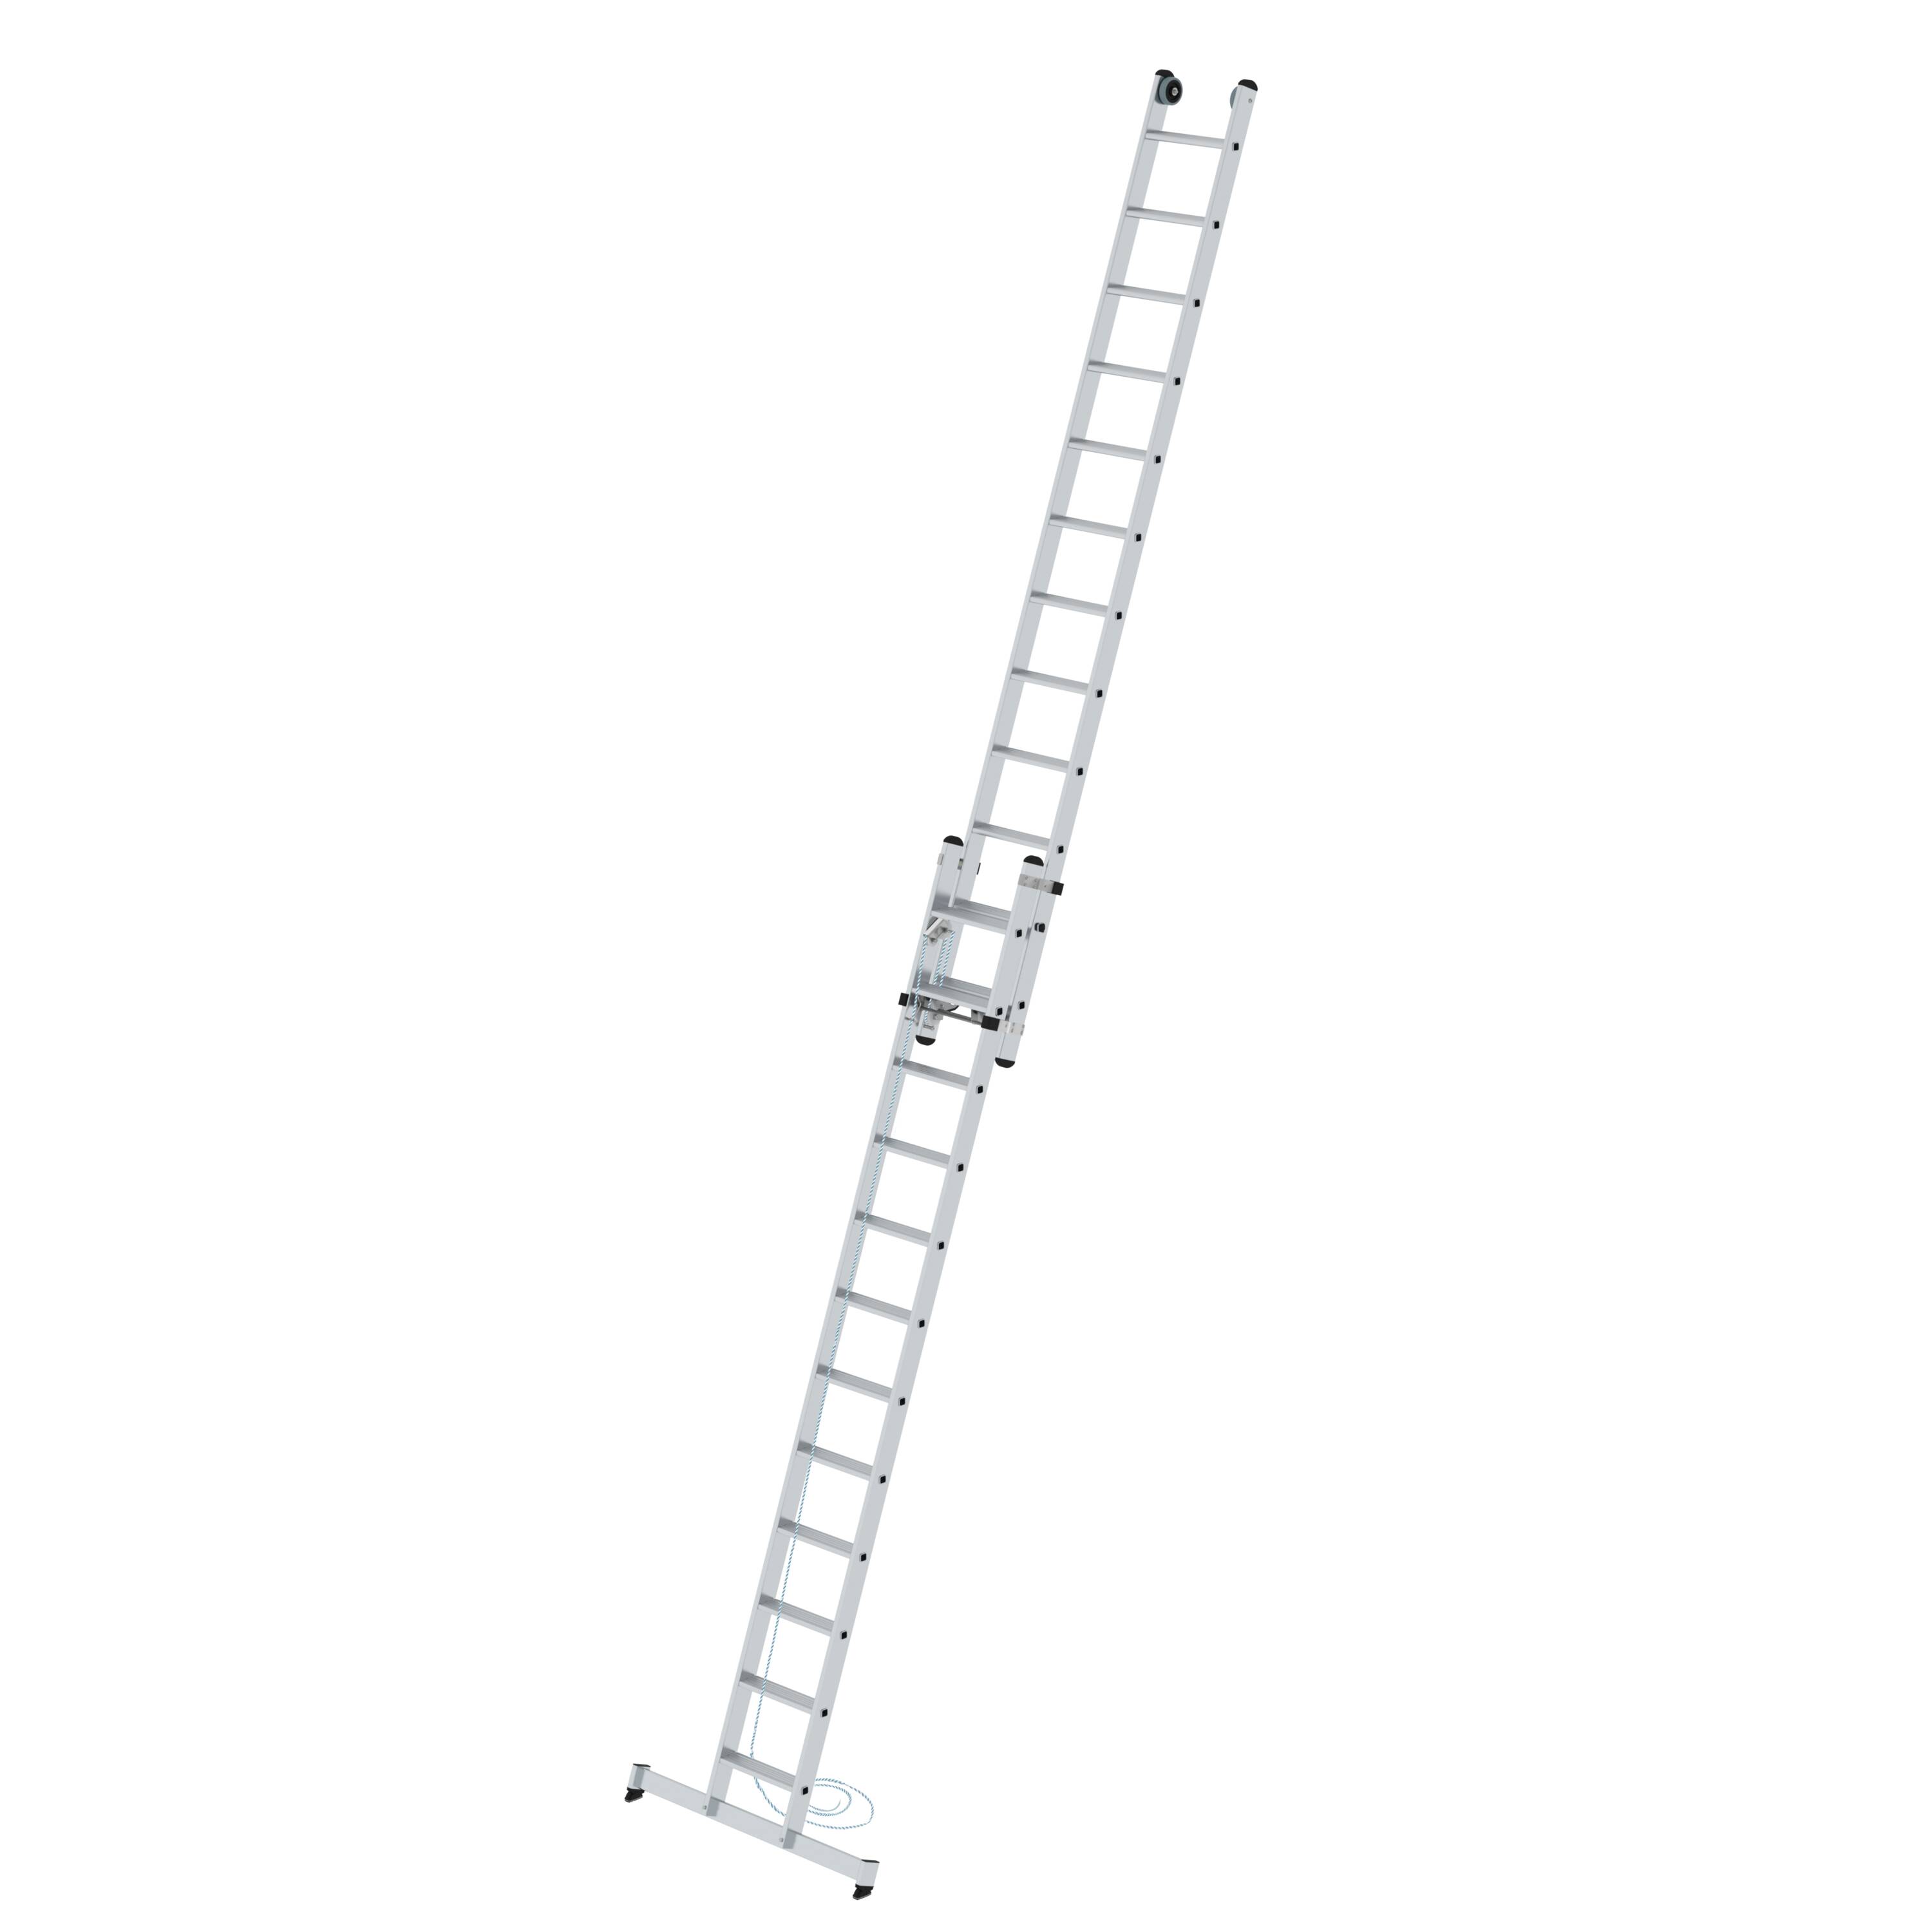 Stufen-Seilzugleiter 2-teilig mit nivello® Traverse 2x12 Stufen